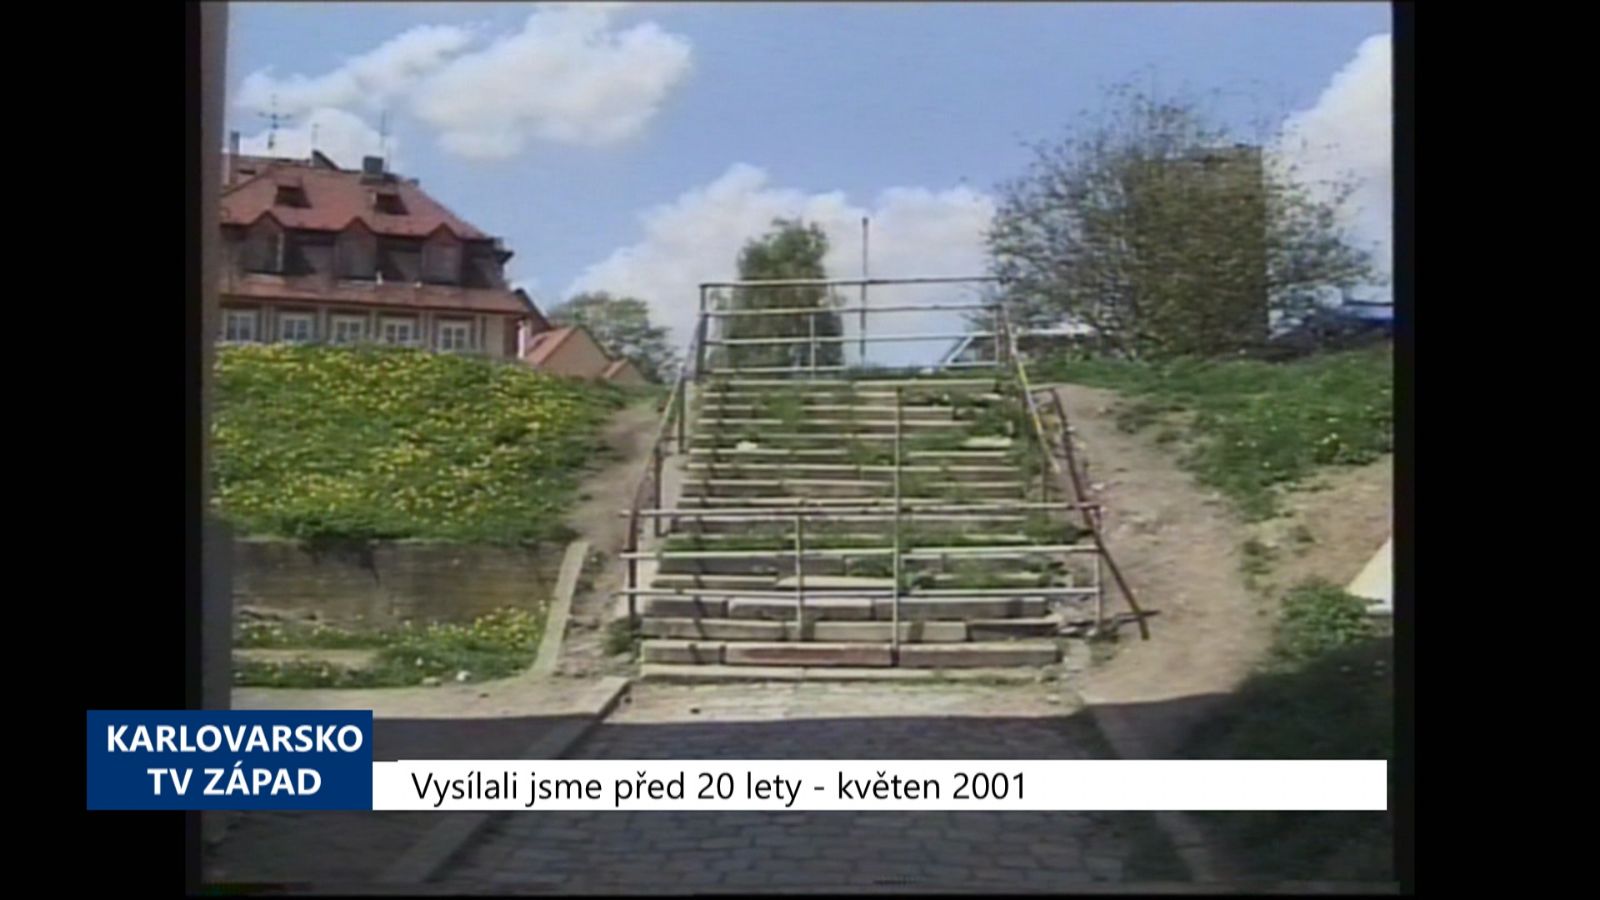 2001 – Cheb: Dojde ke zprůjezdnění ulice Elišky Krásnohorské (TV Západ)